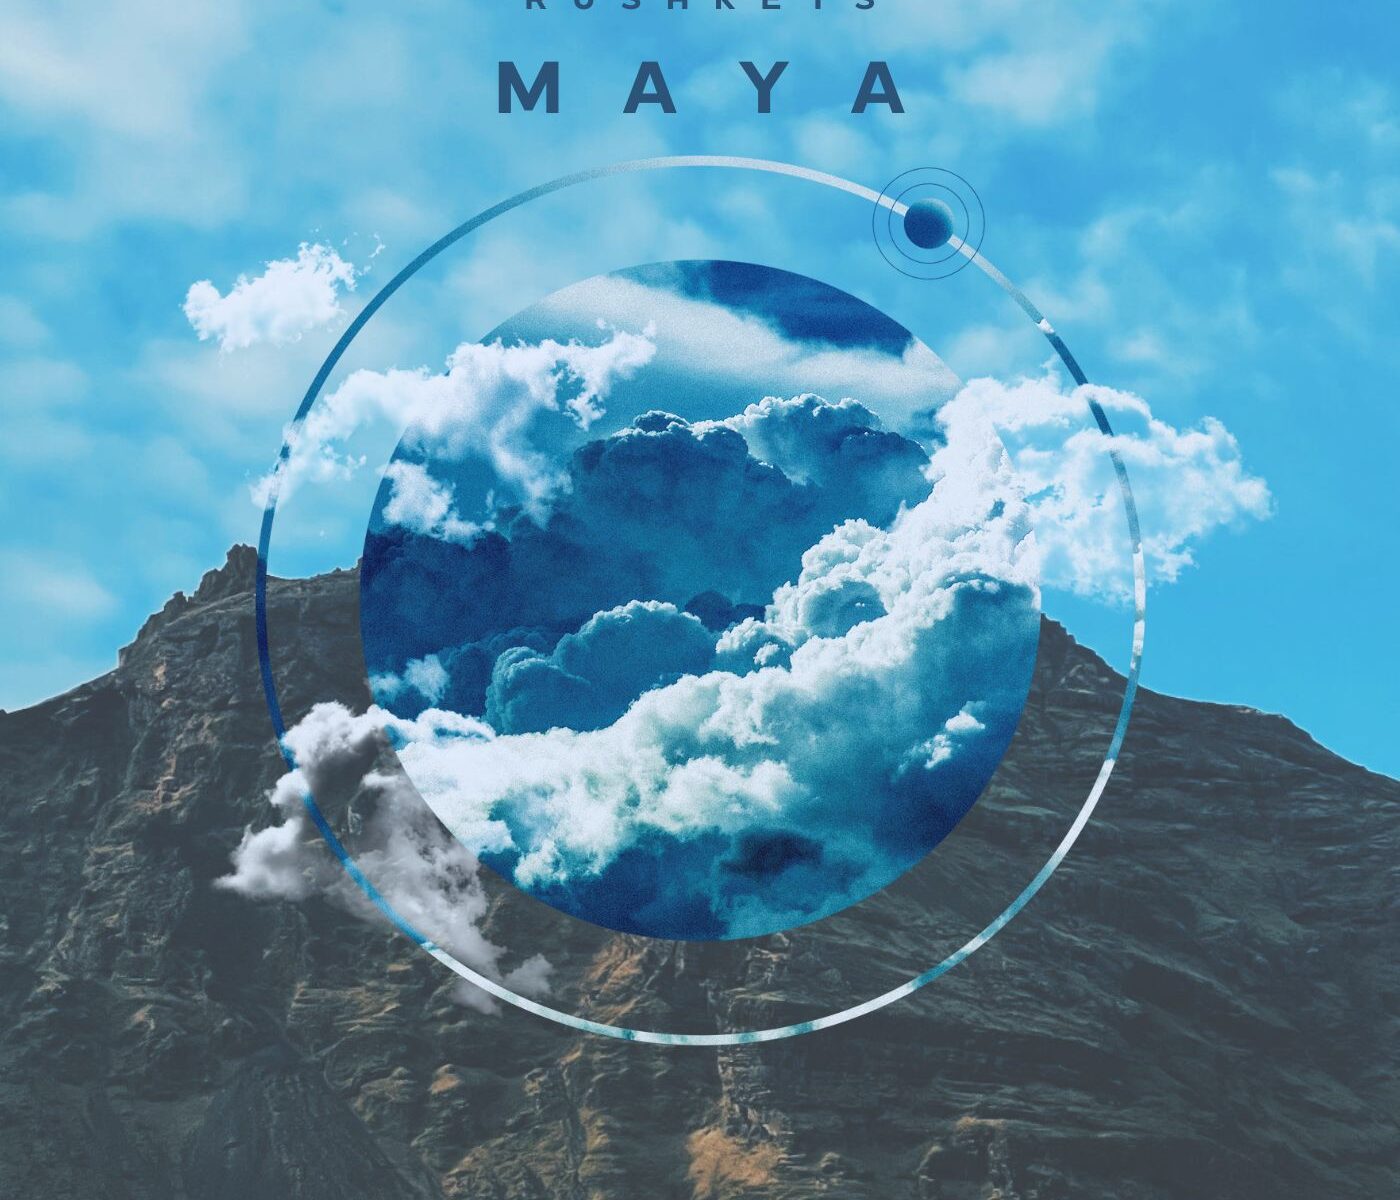 "Maya" by Rushkeys